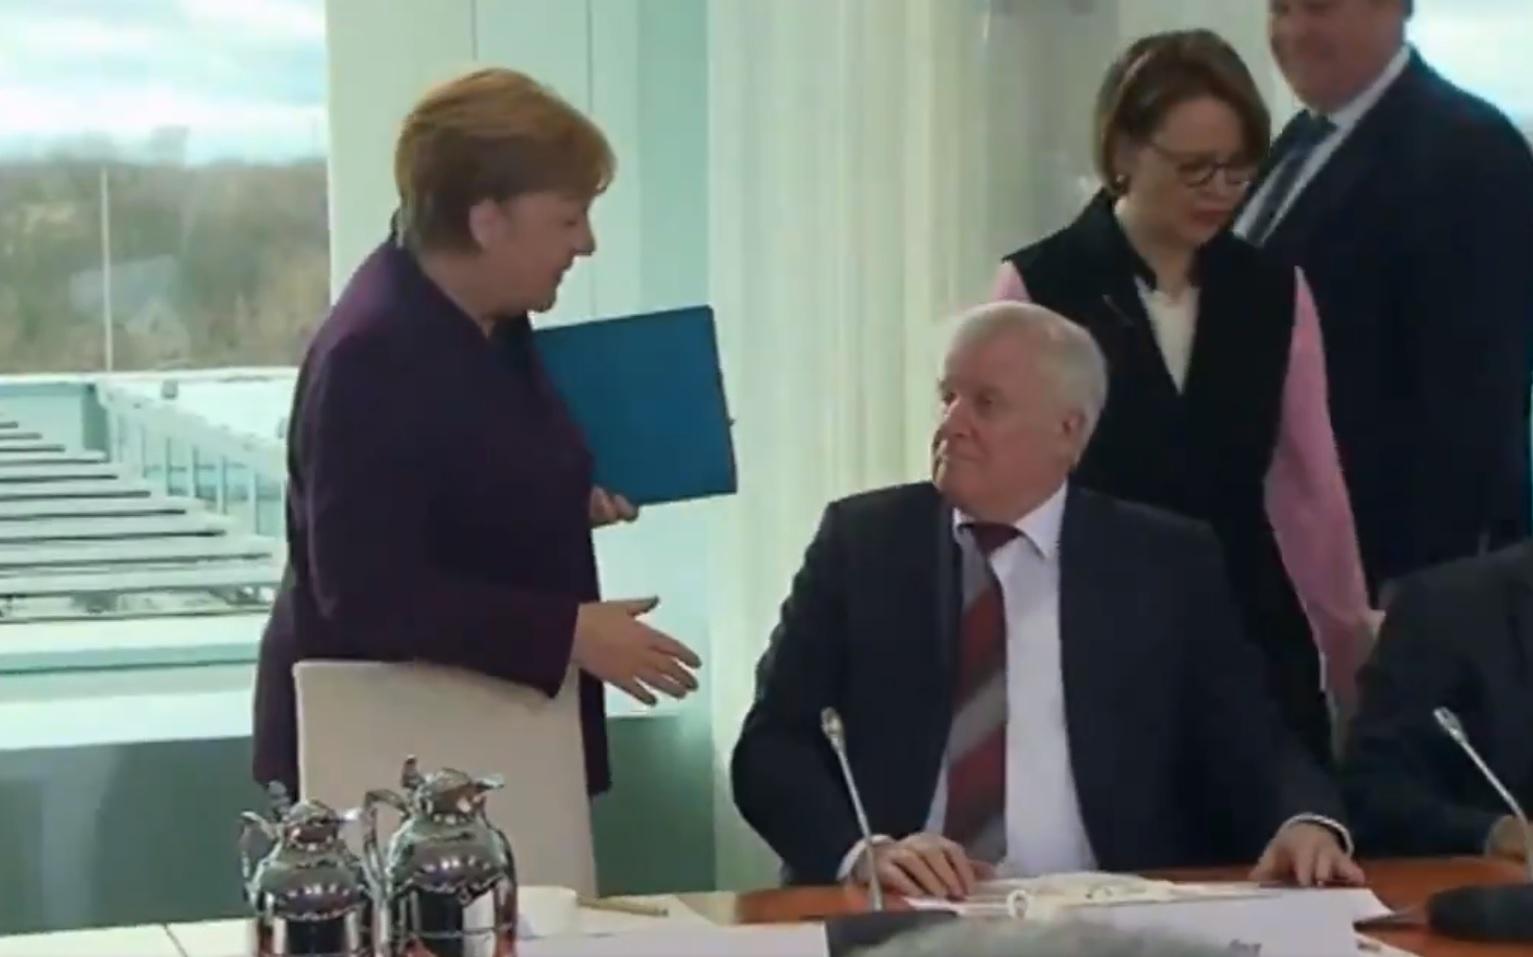 Momento del no saludo entre Angela Merkel y Horst Seehofer. Fuente: Twitter.